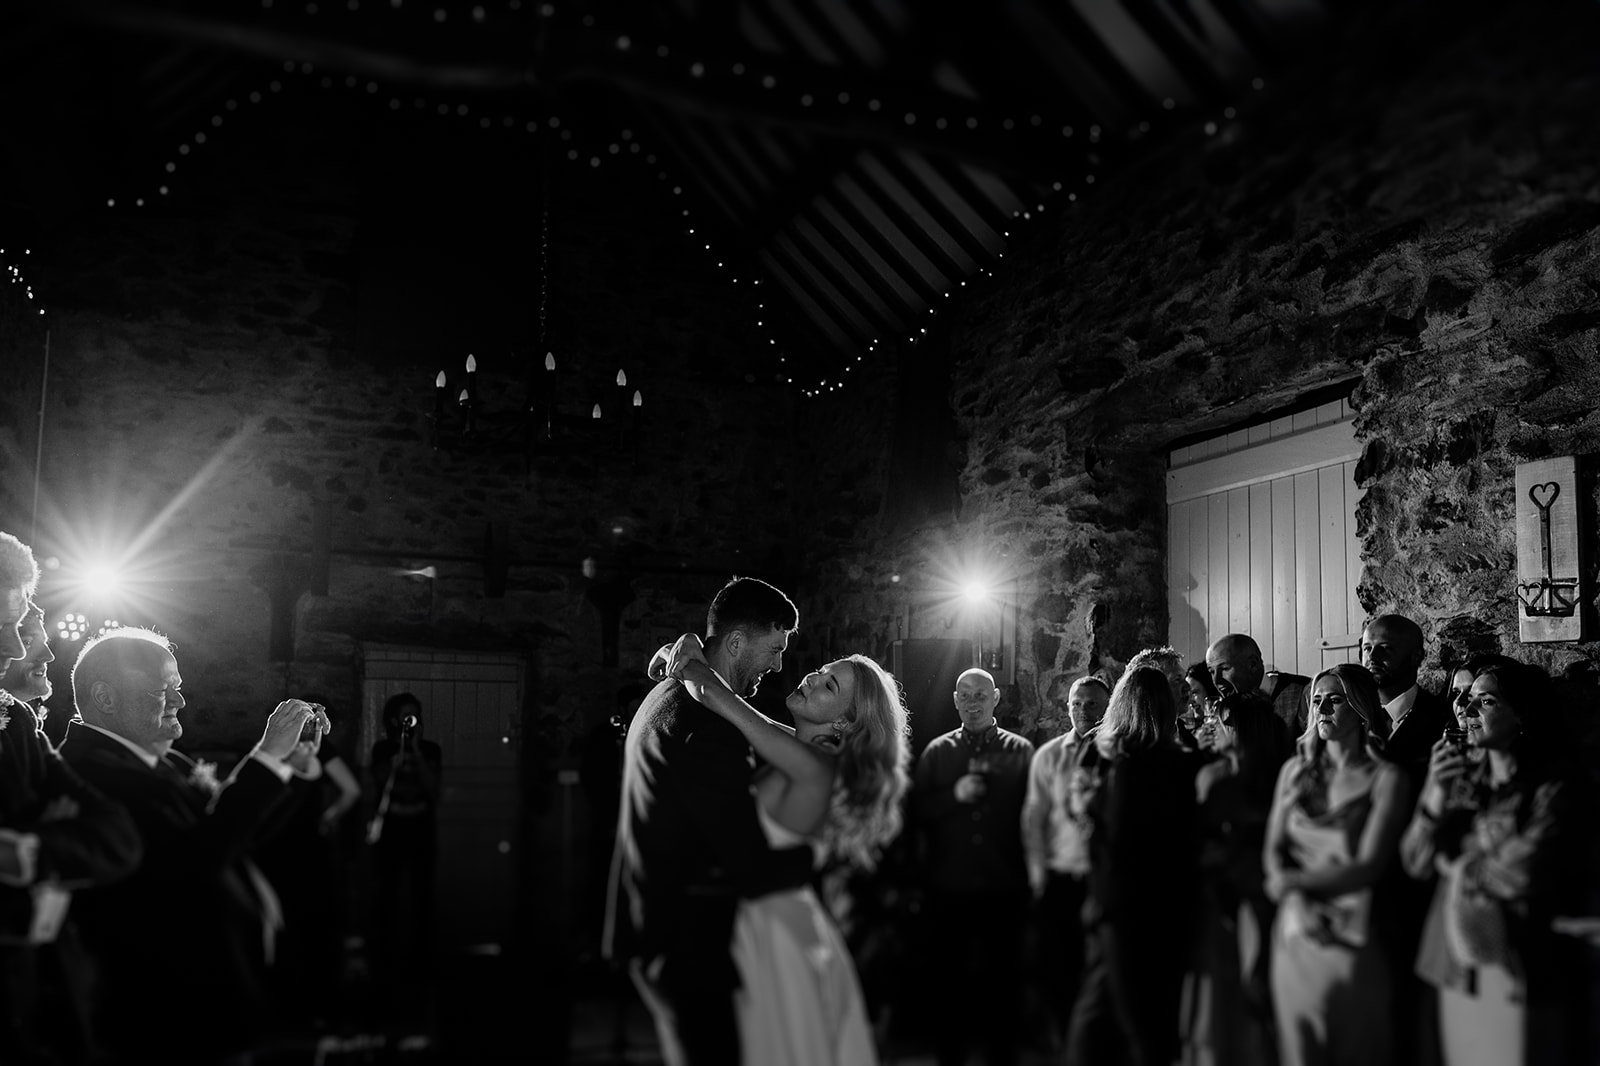 Modern wedding photography at Hafod Farm, a picturesque barn wedding venue in Eryri (Snowdonia).